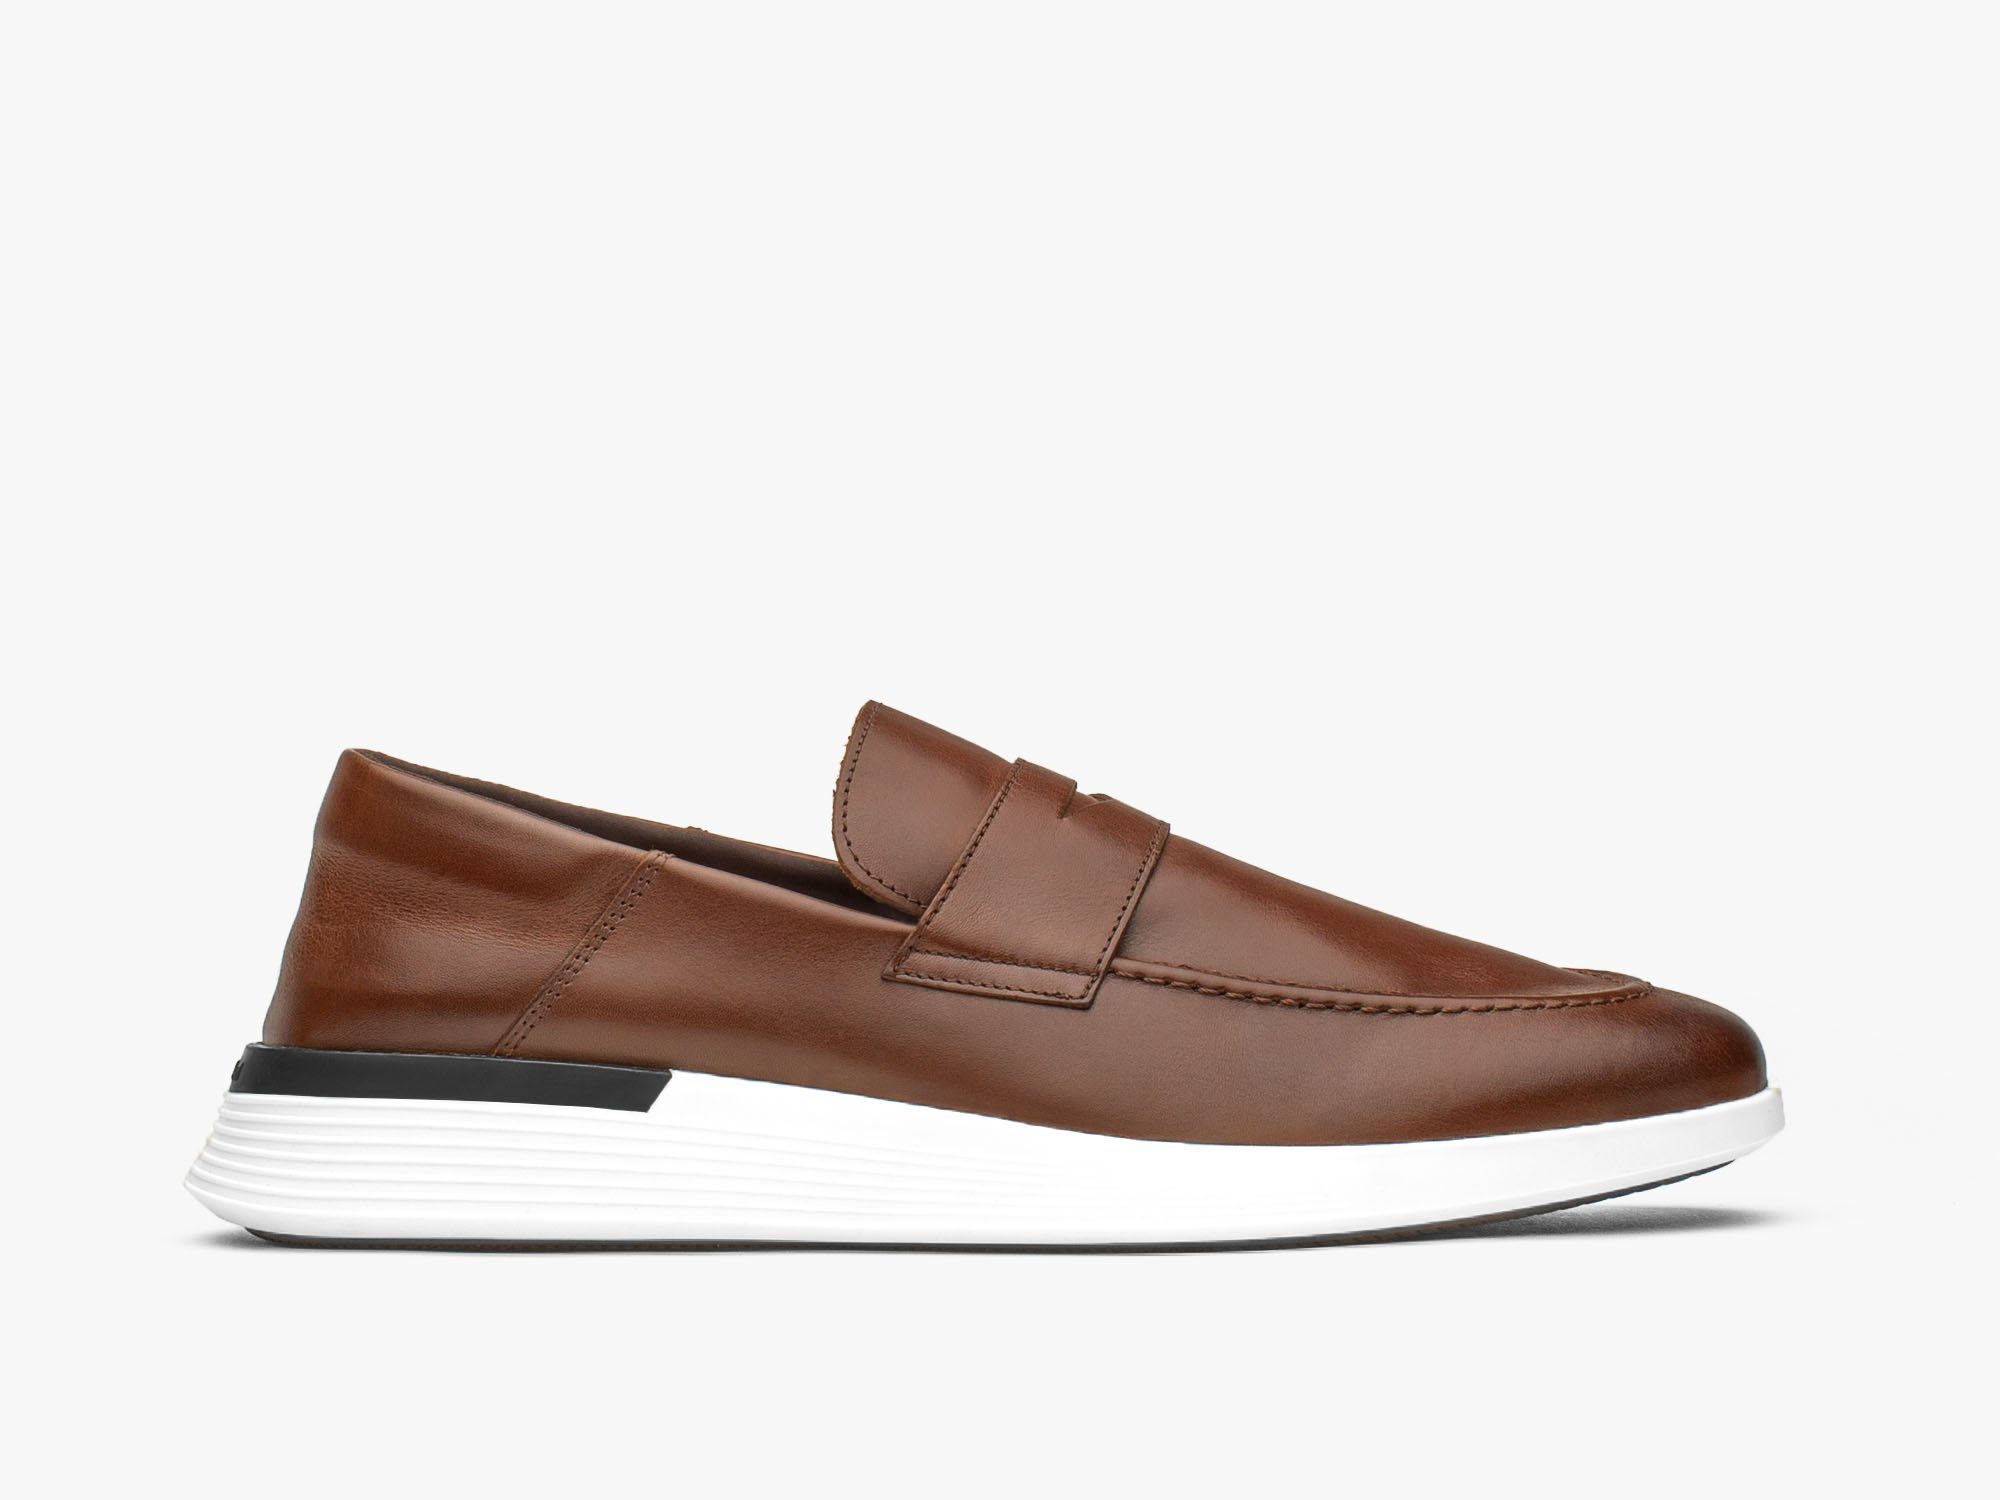 loafer dress shoes for men